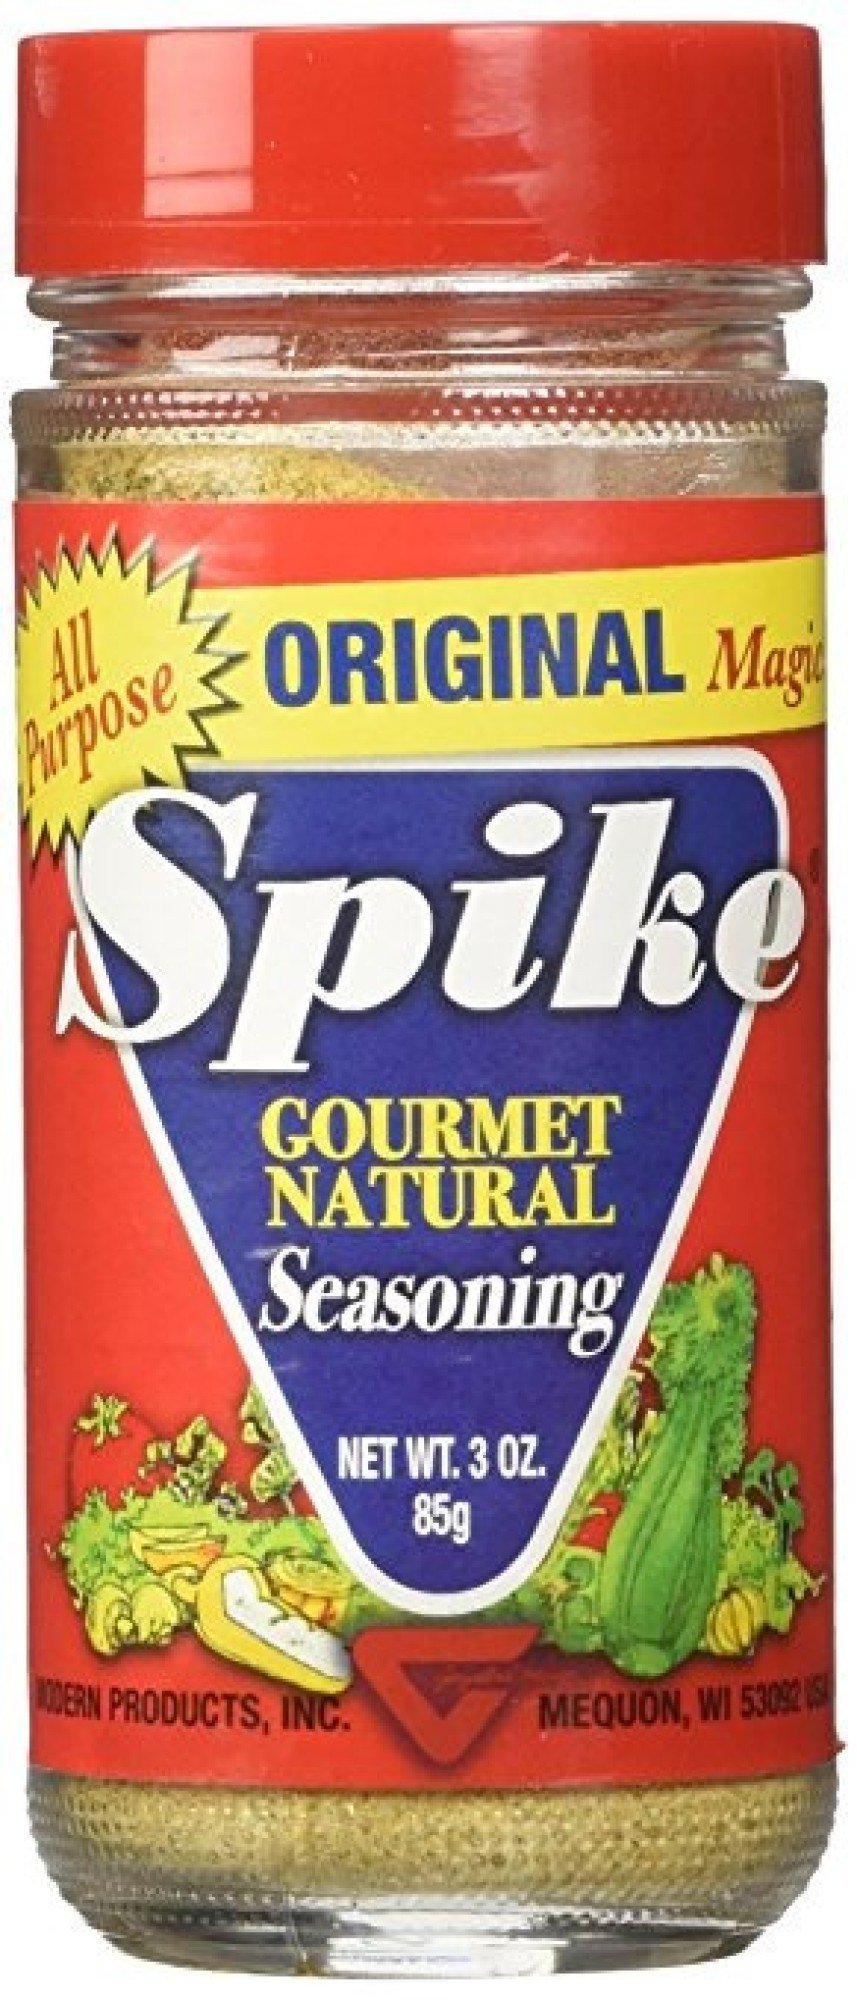 Spike Seasonings Review